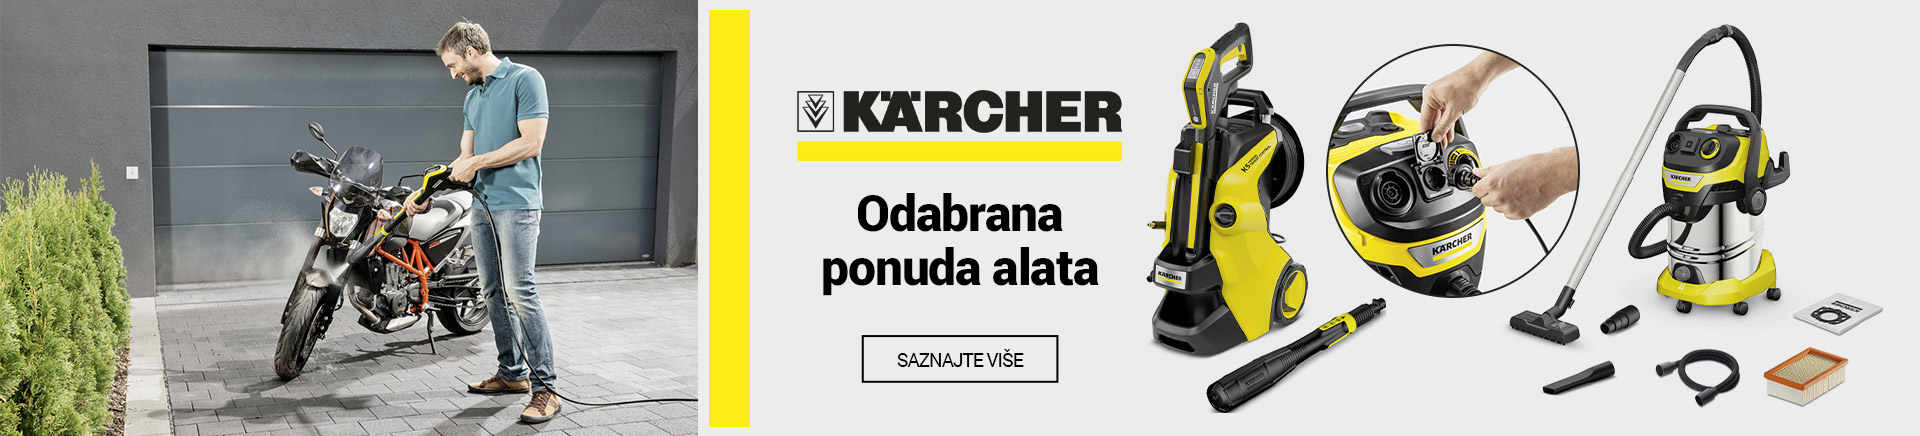 HR Karcher odabrana ponuda alata MOBILE 380 X 436.jpg